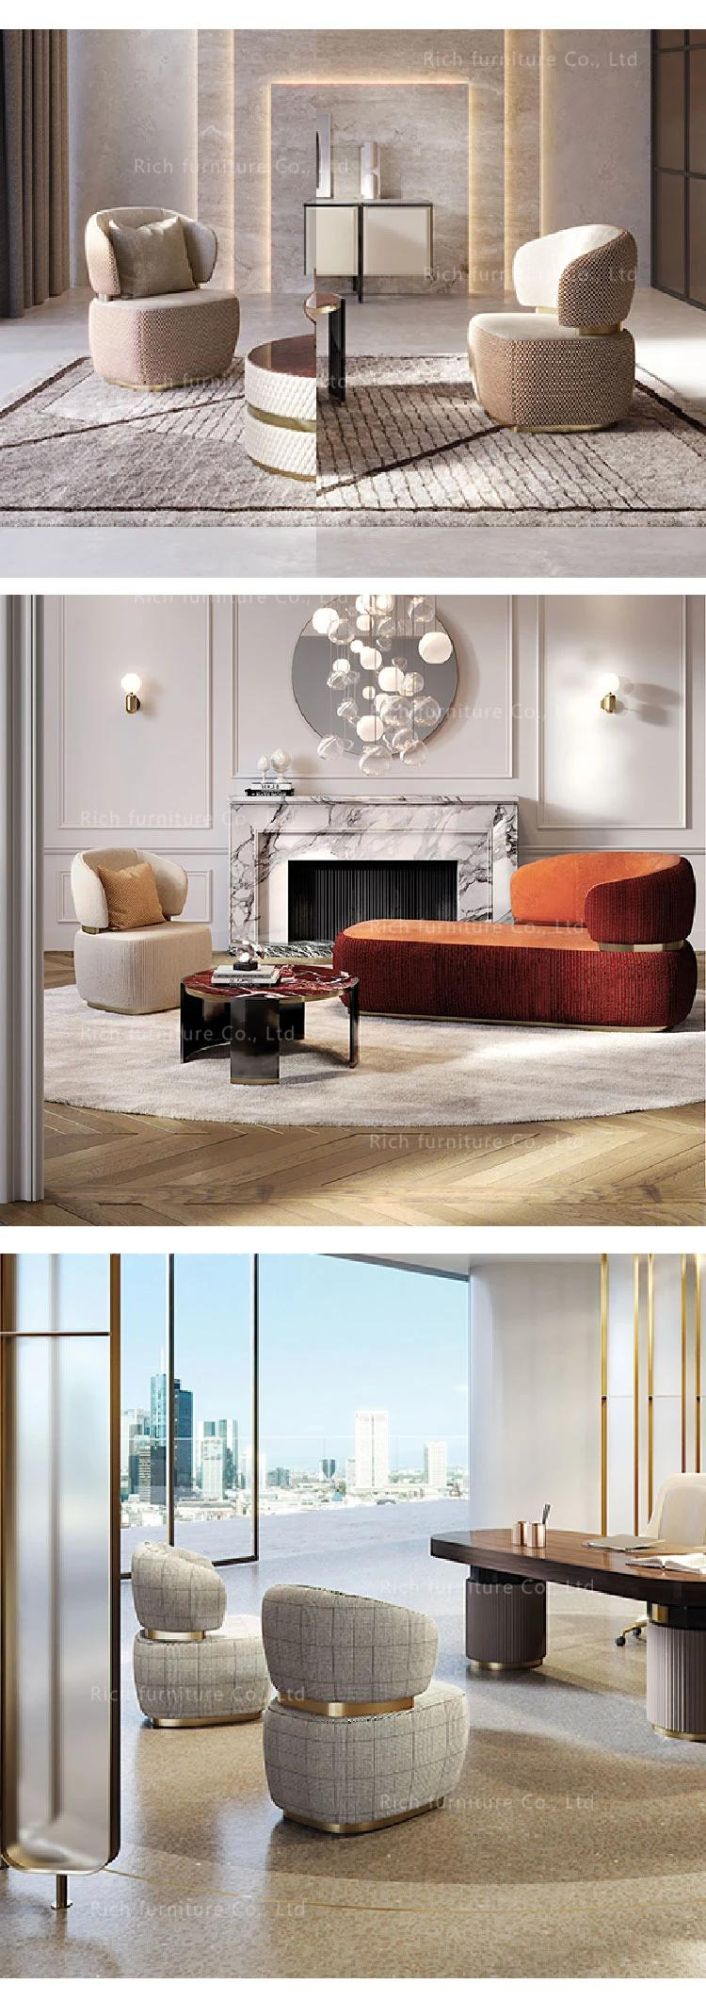 Bon Ton Sofa Canape Italian 3 Seatar Couch Fabric Hotel Modern Nordic Living Room Lounge Sofa